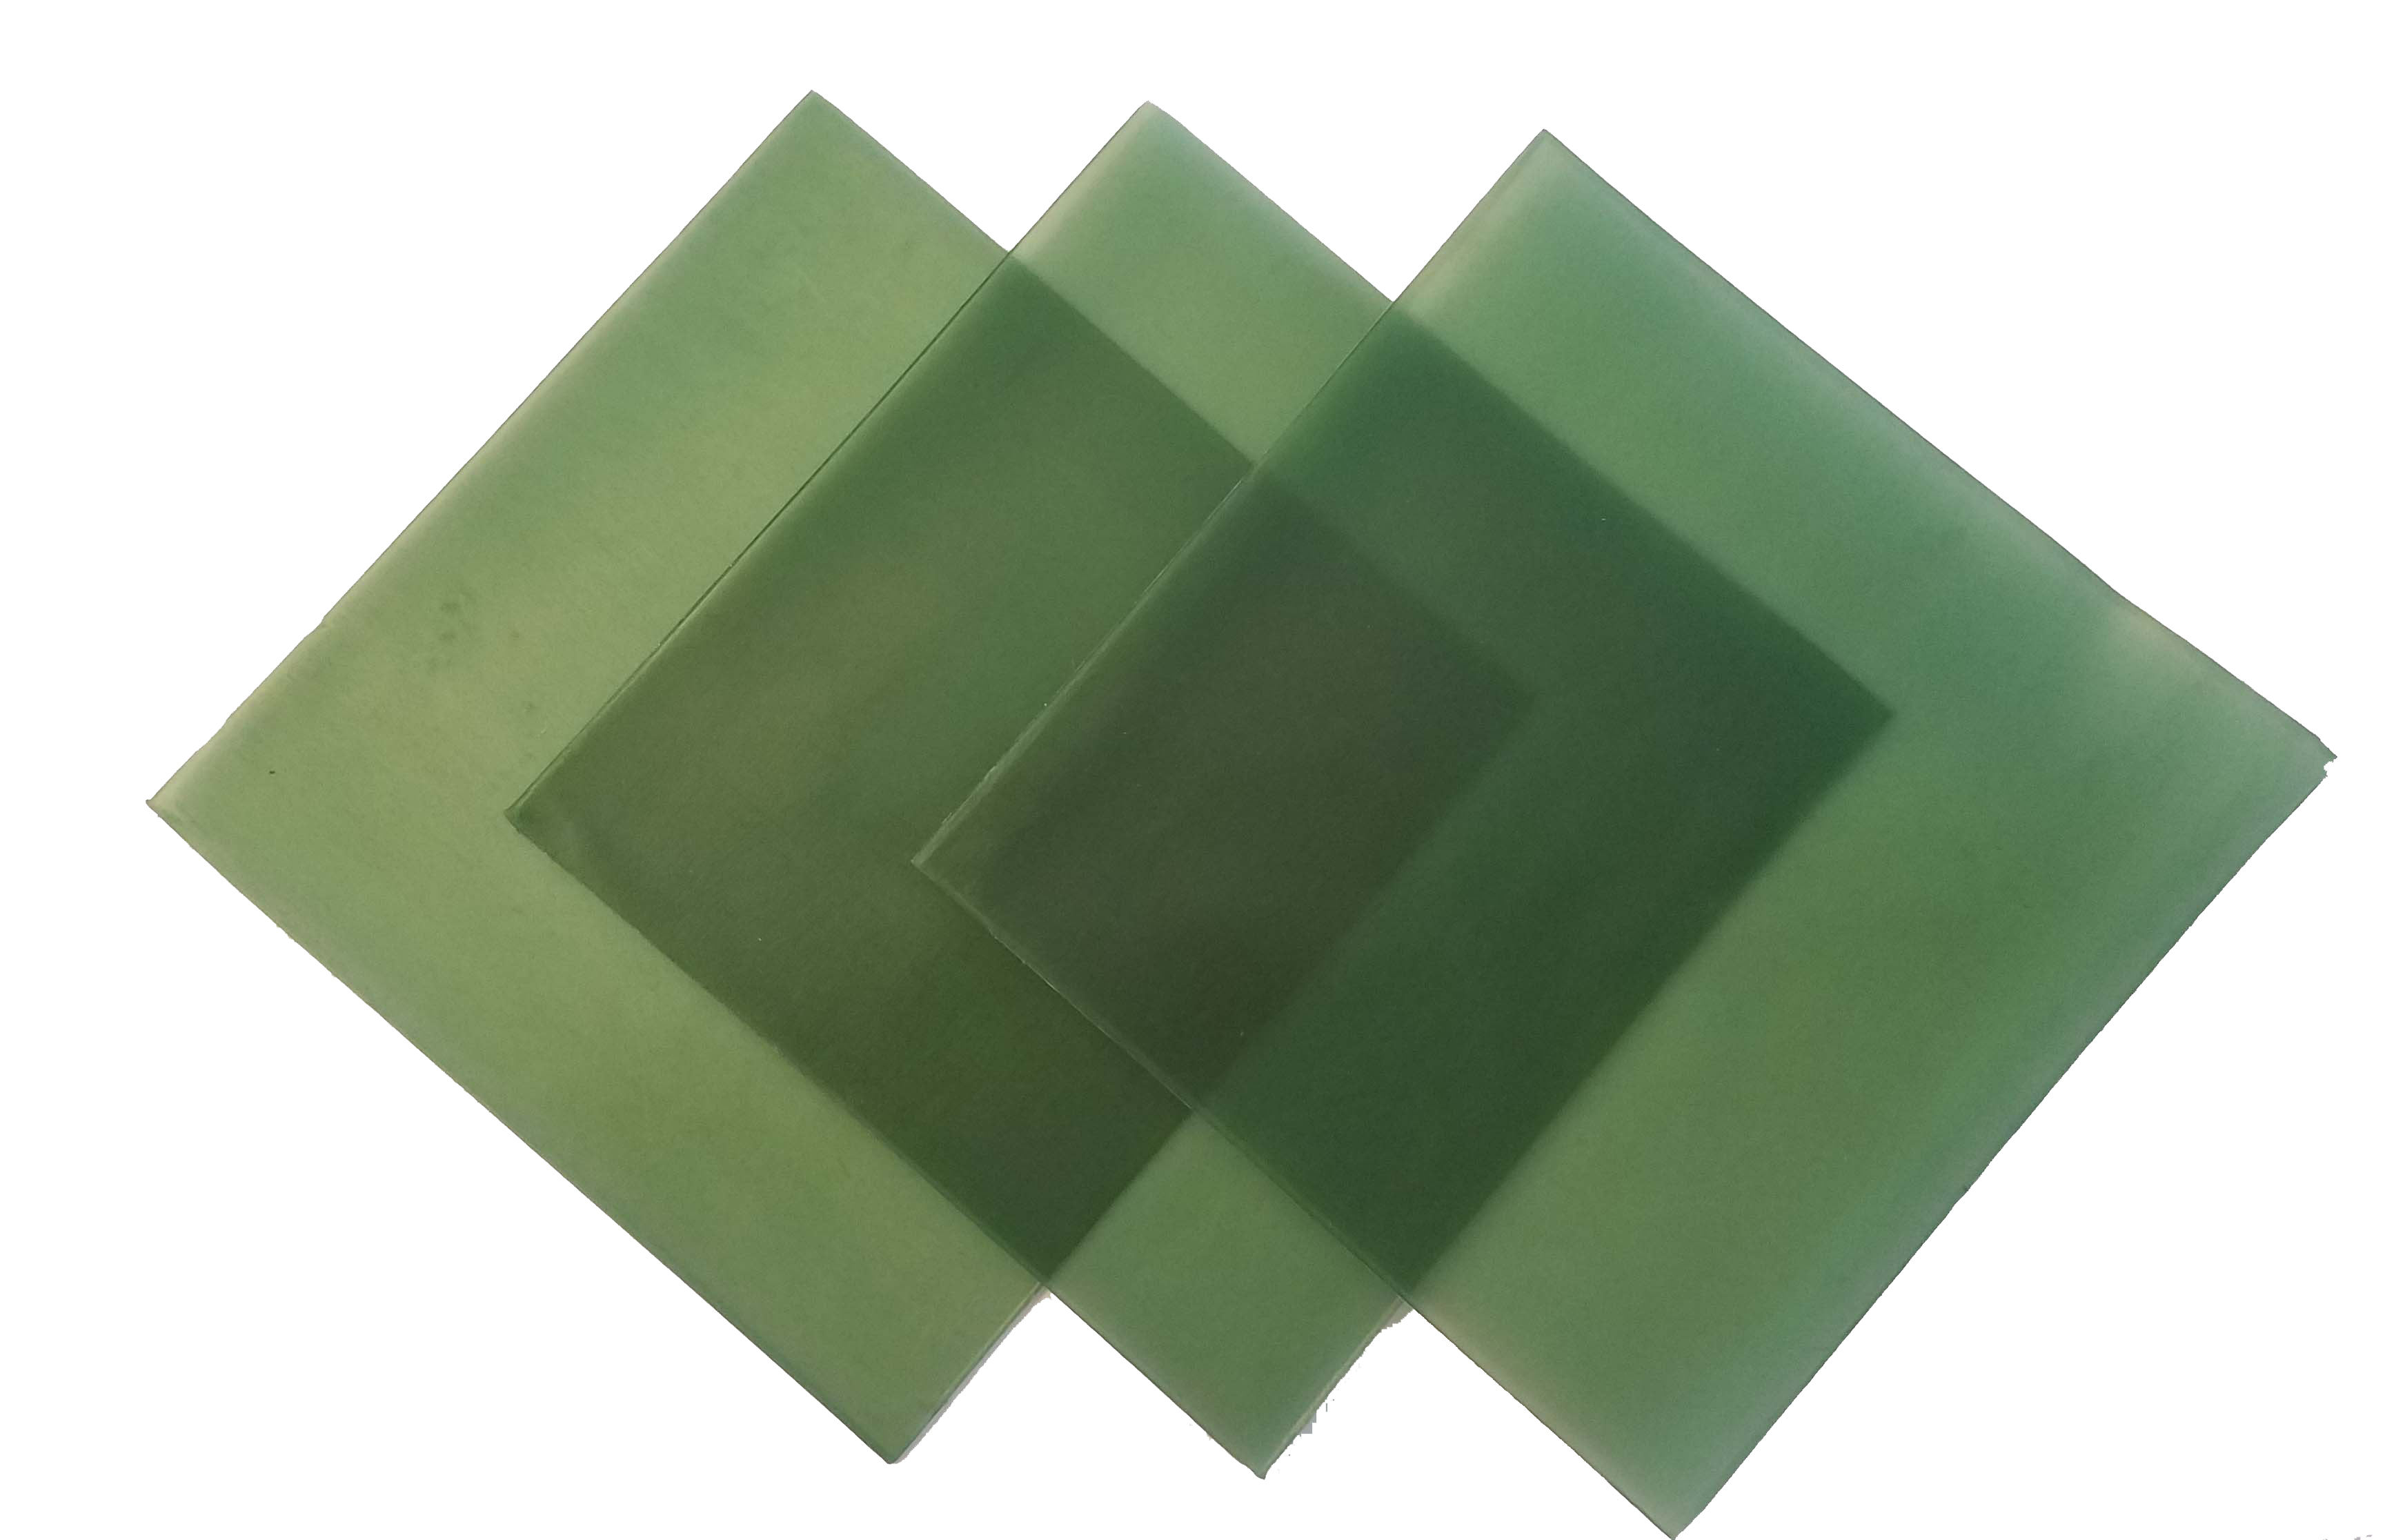 4"x4" sheet wax 18 gauge green